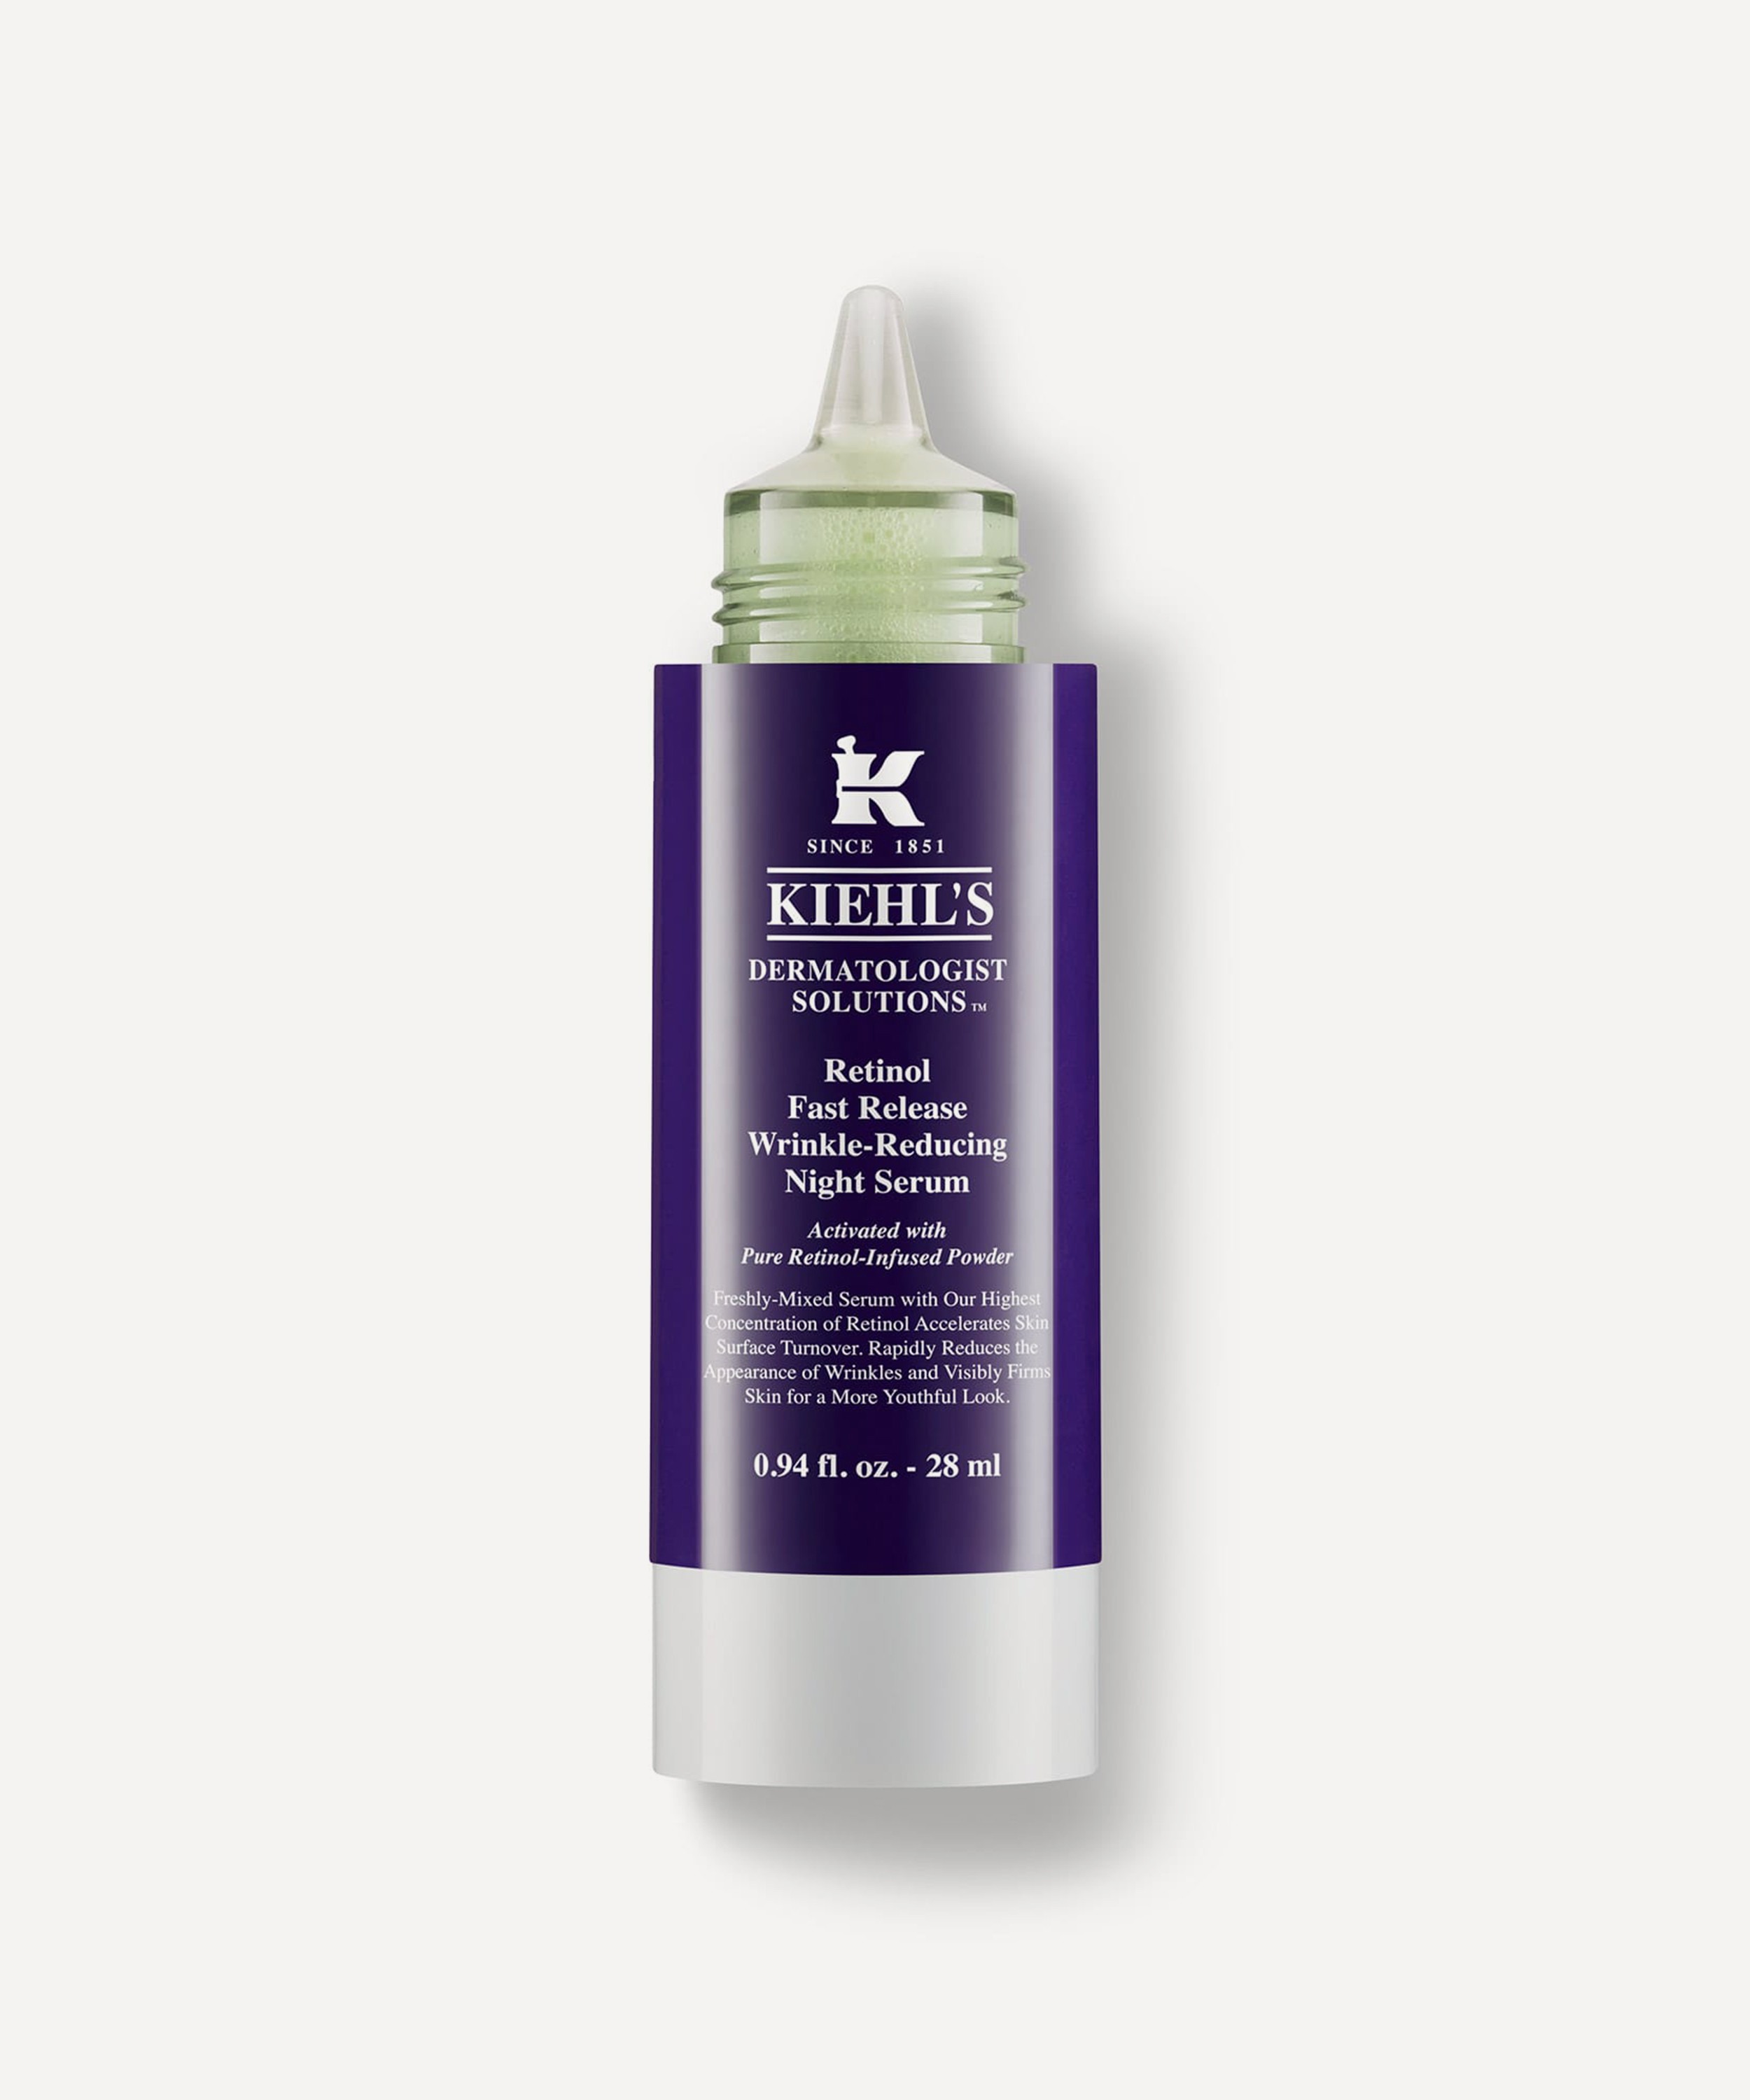 Kiehl's - Retinol Fast Release Wrinkle-Reducing Night Serum 28ml